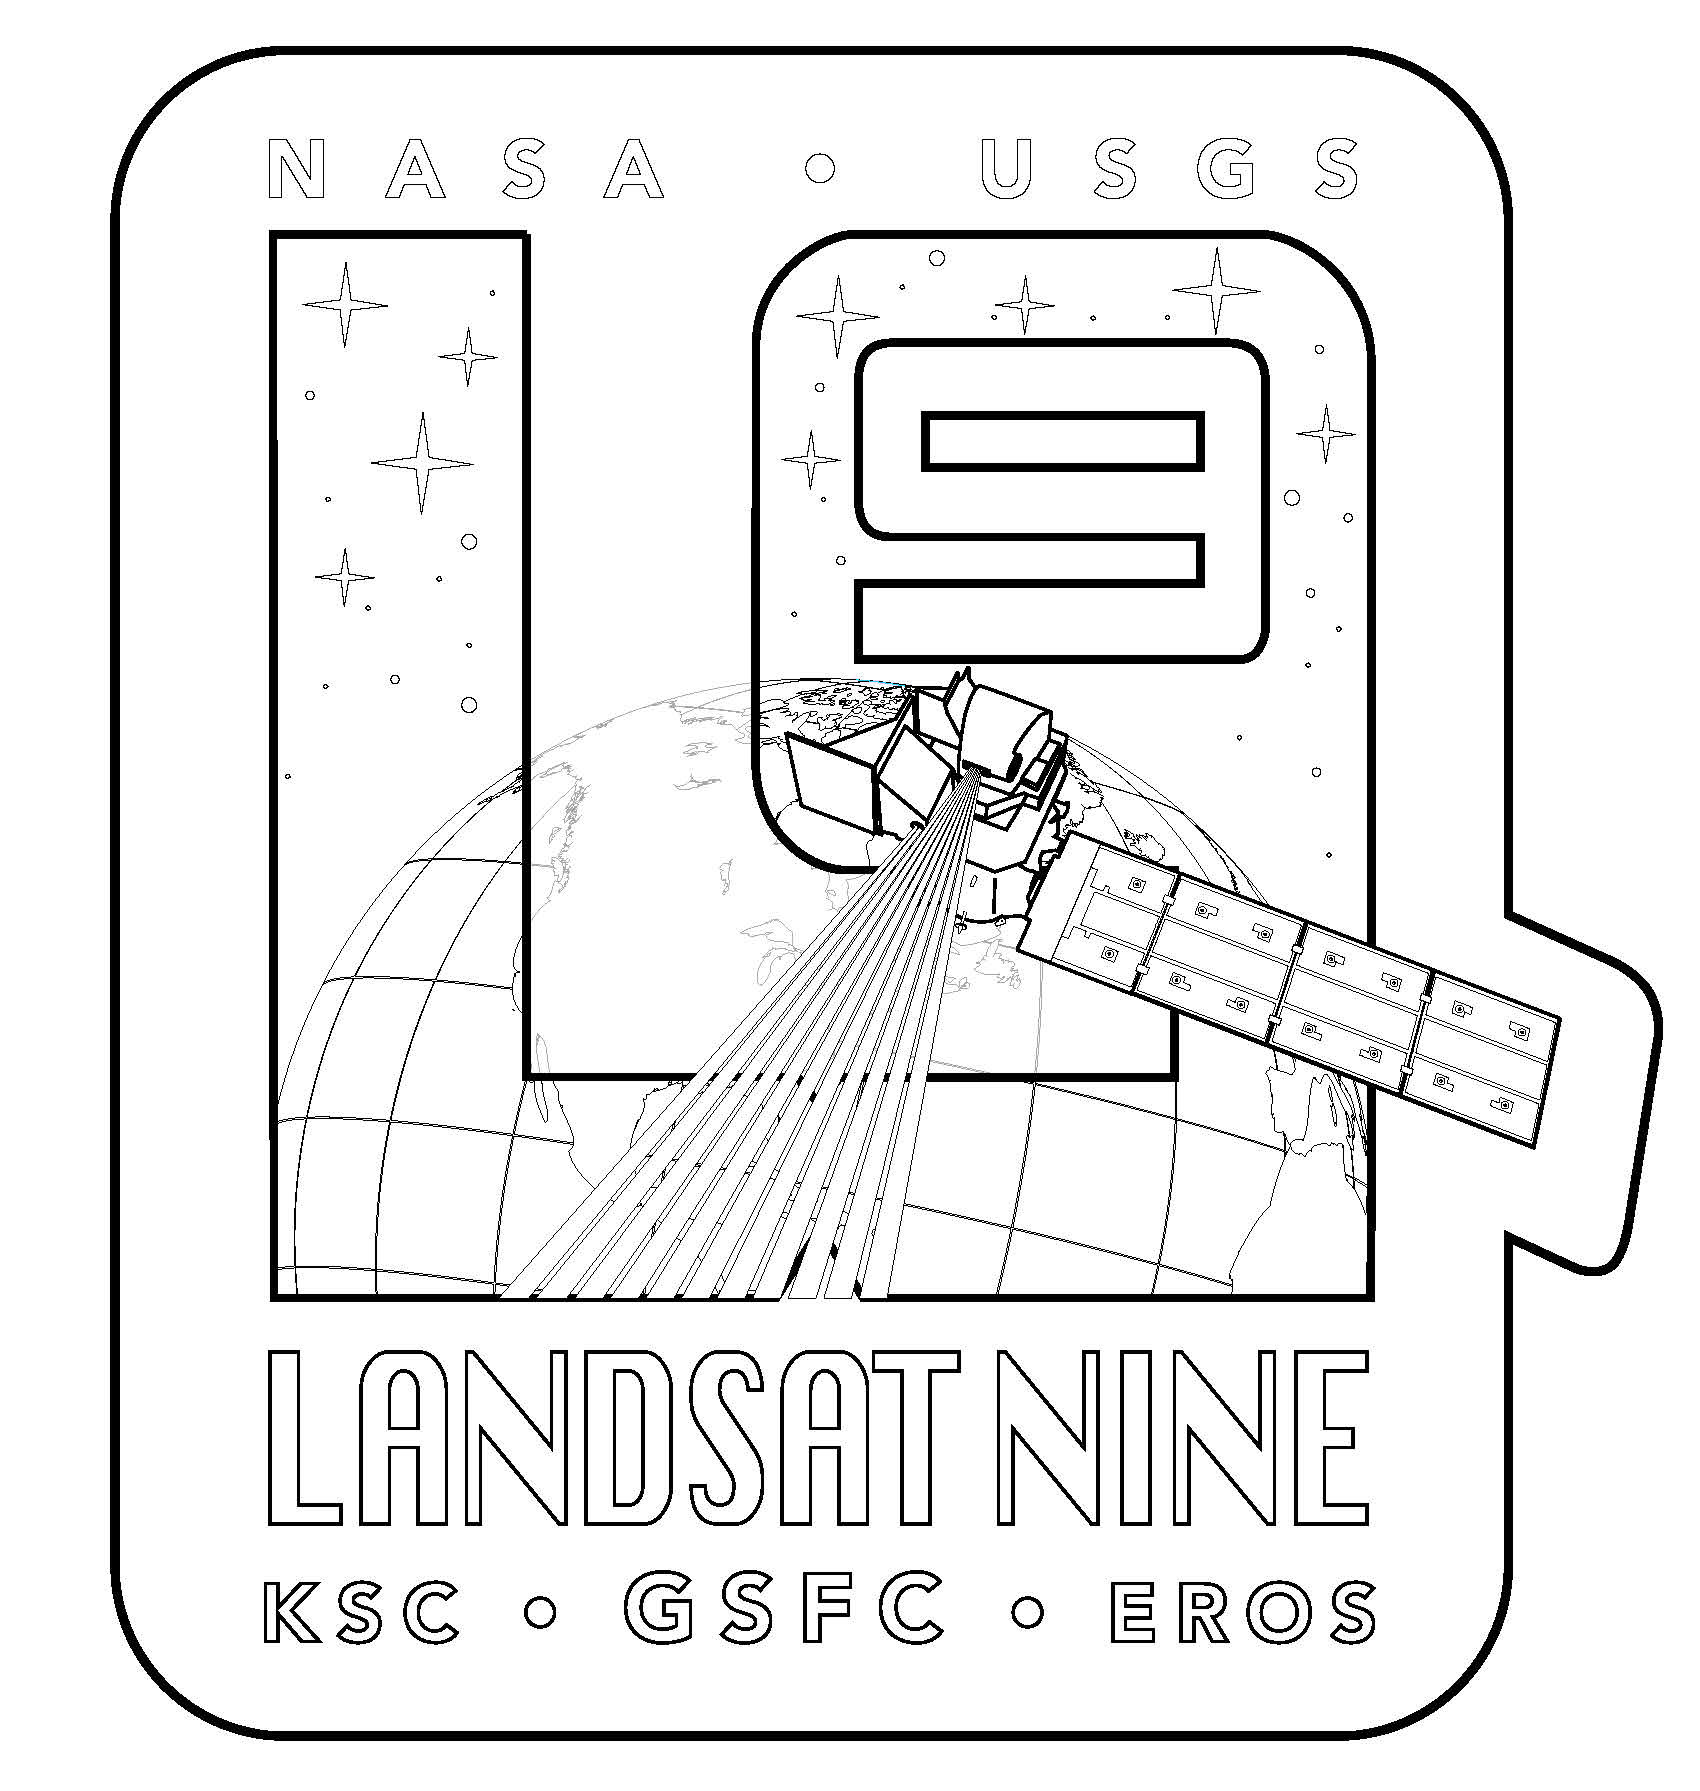 Landsat 9 Mission logo